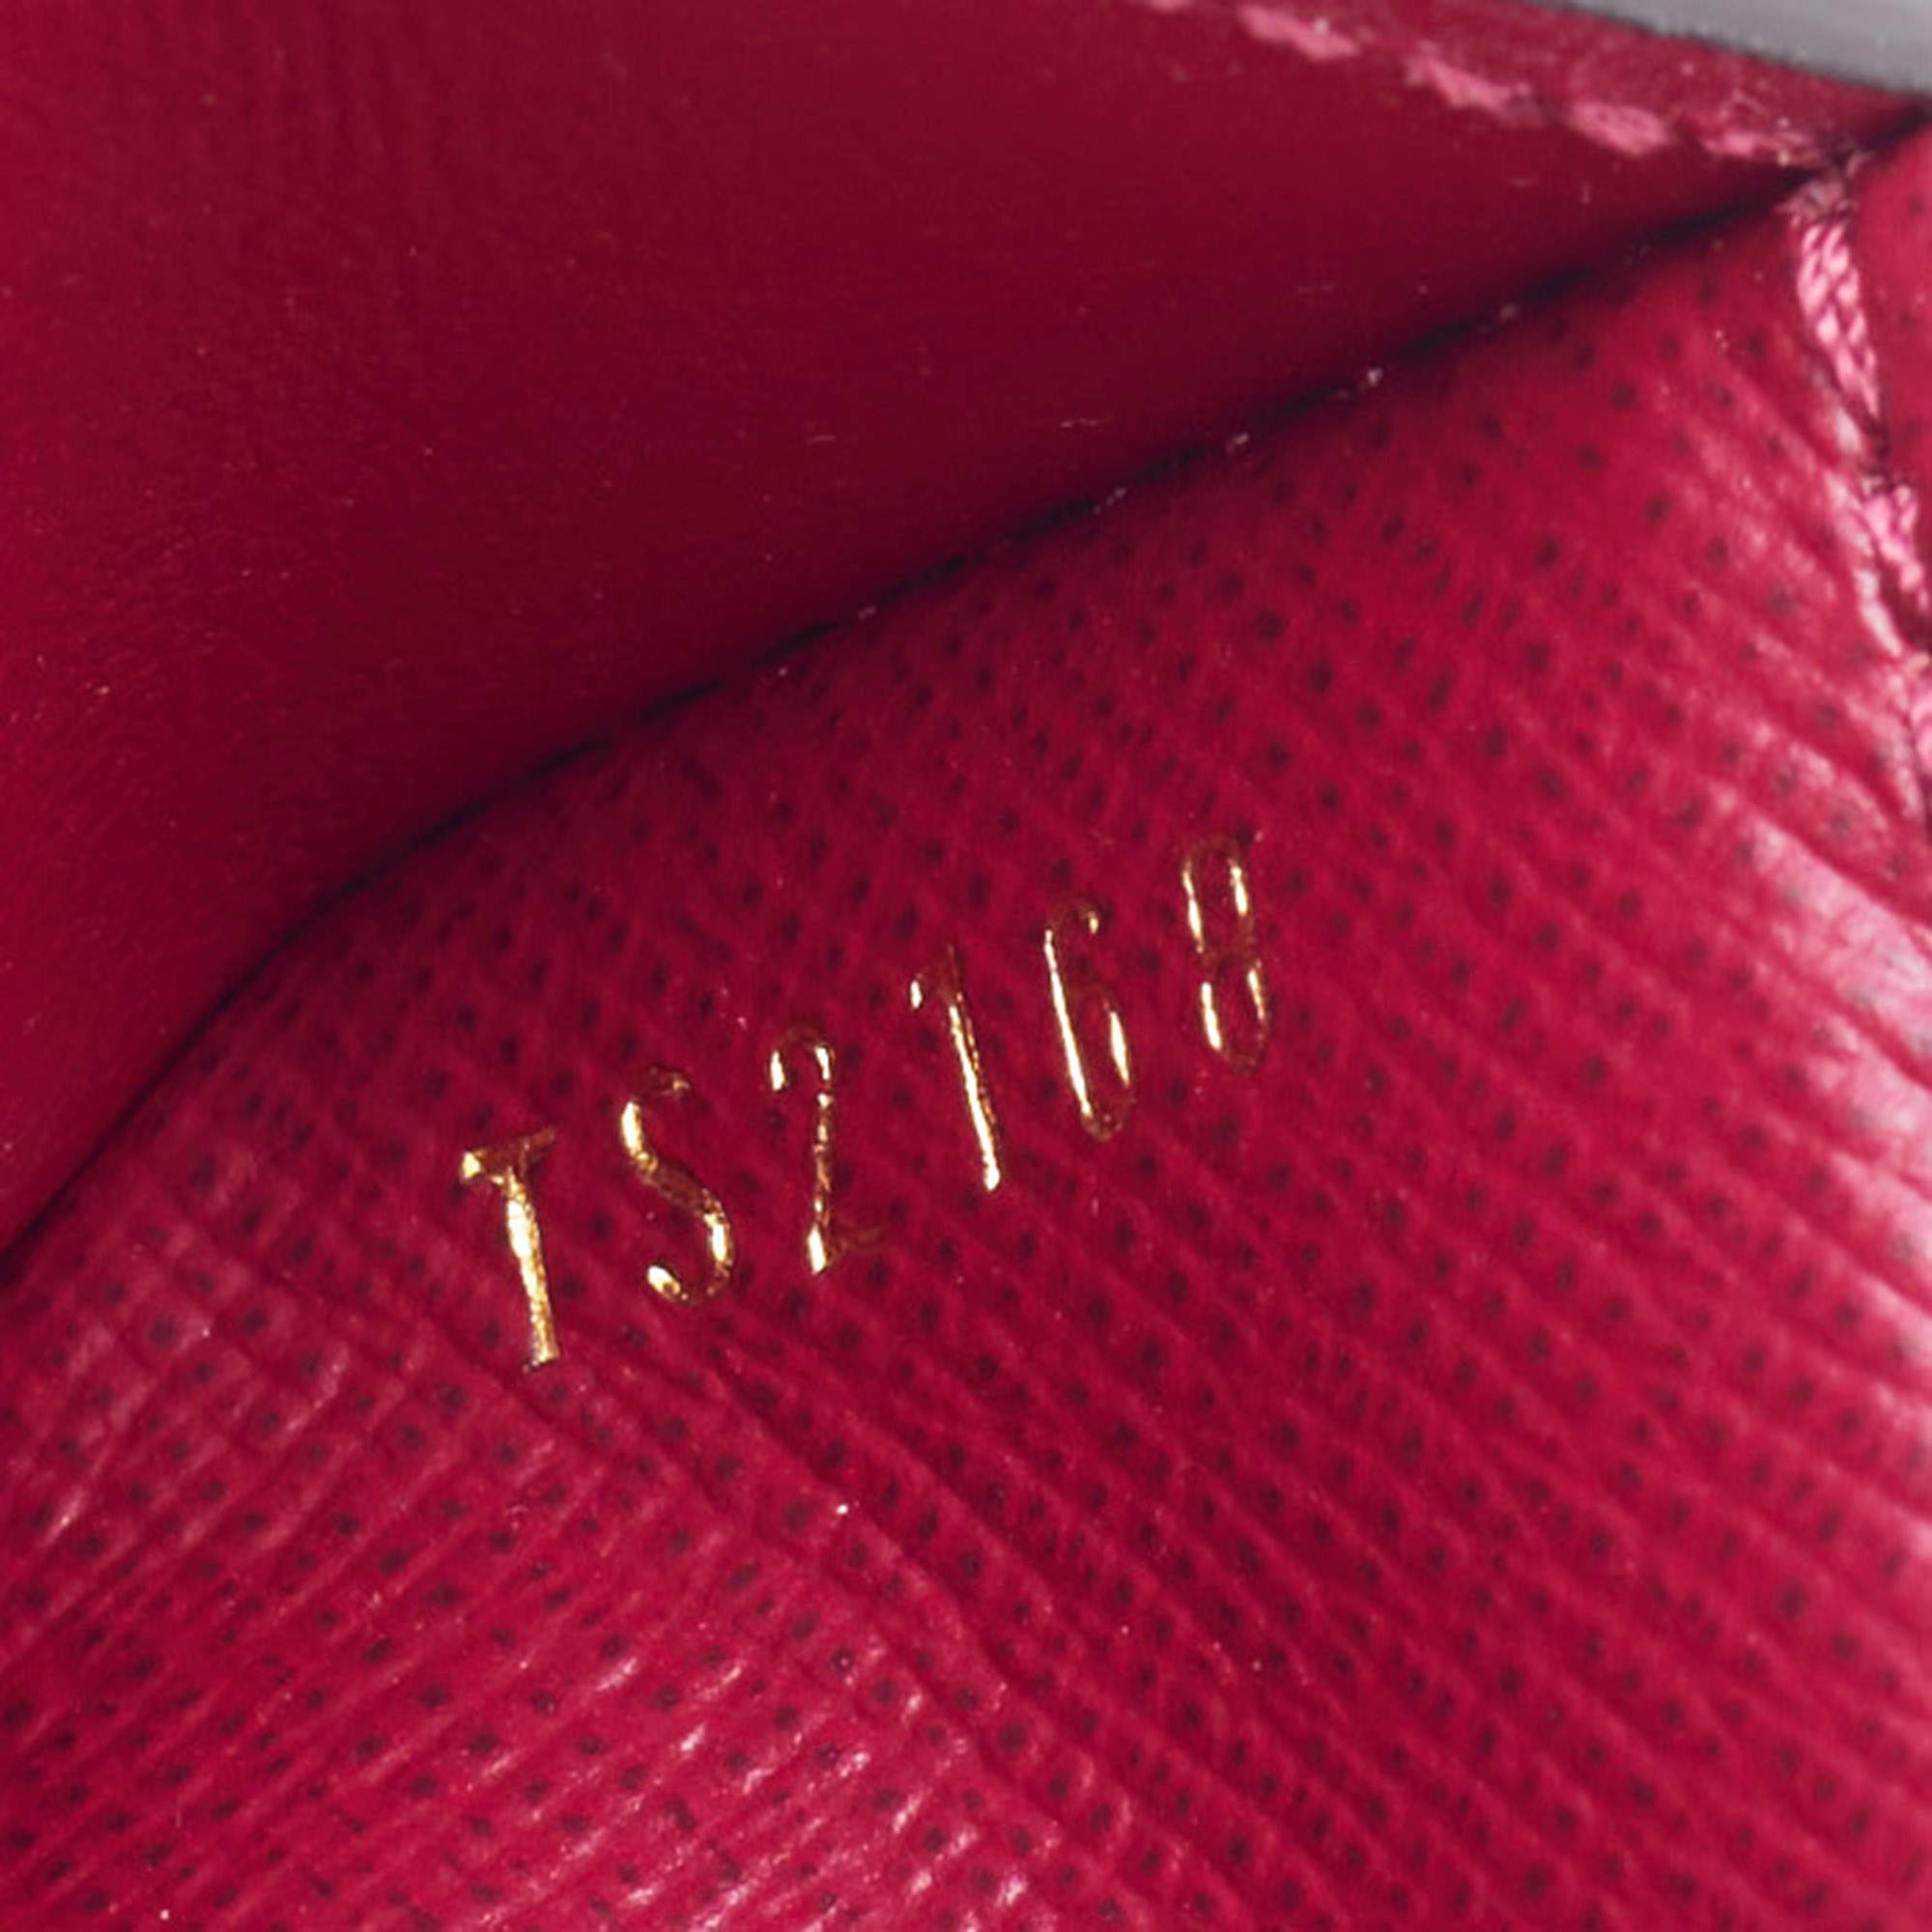 Louis Vuitton 2018 Monogram Zoé Fuchsia Wallet